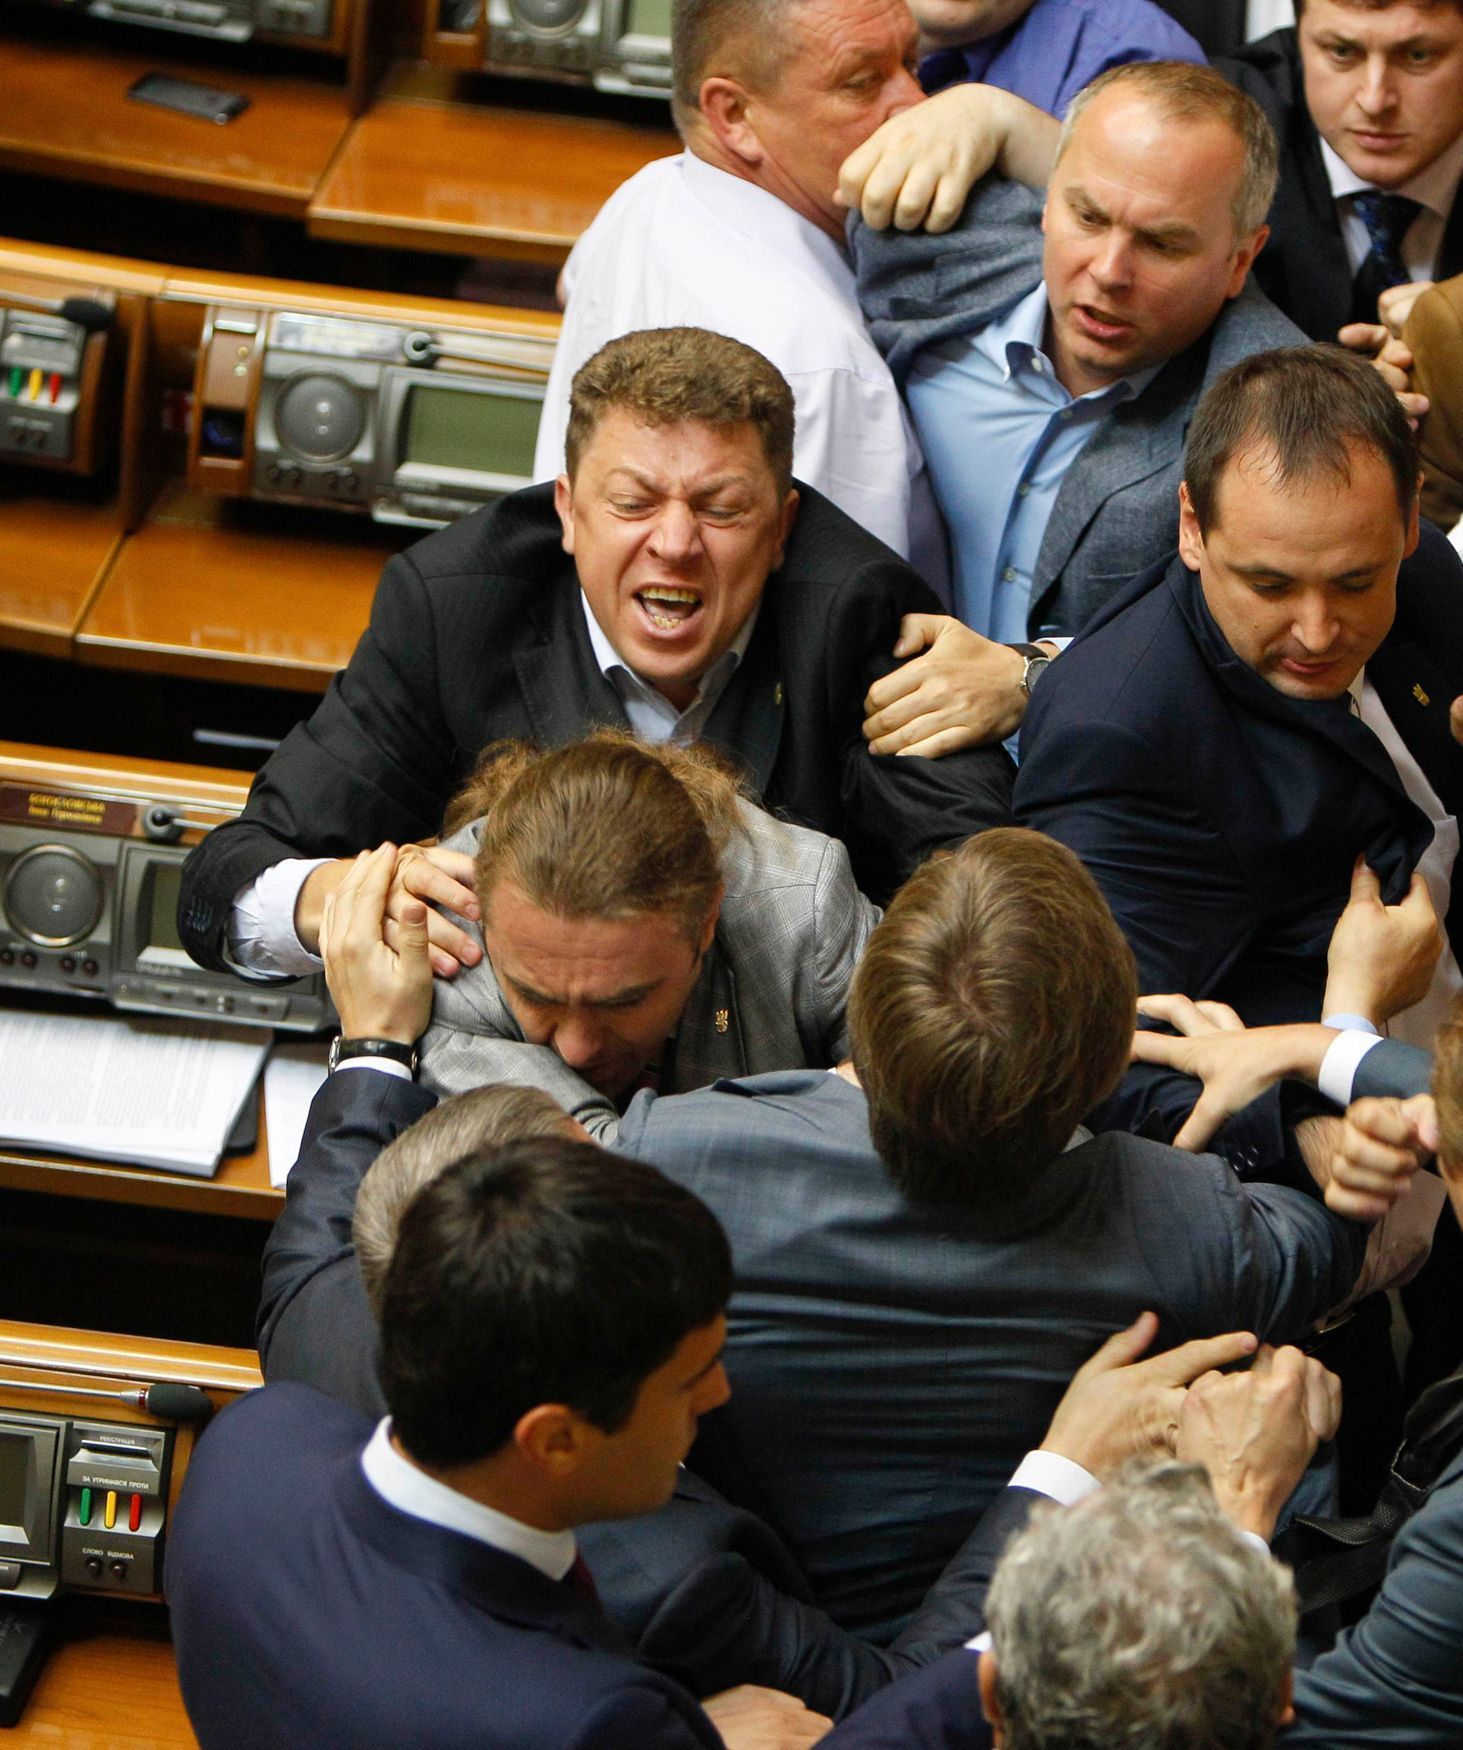 Ukrajina - rvačka v ukrajinském parlamentu